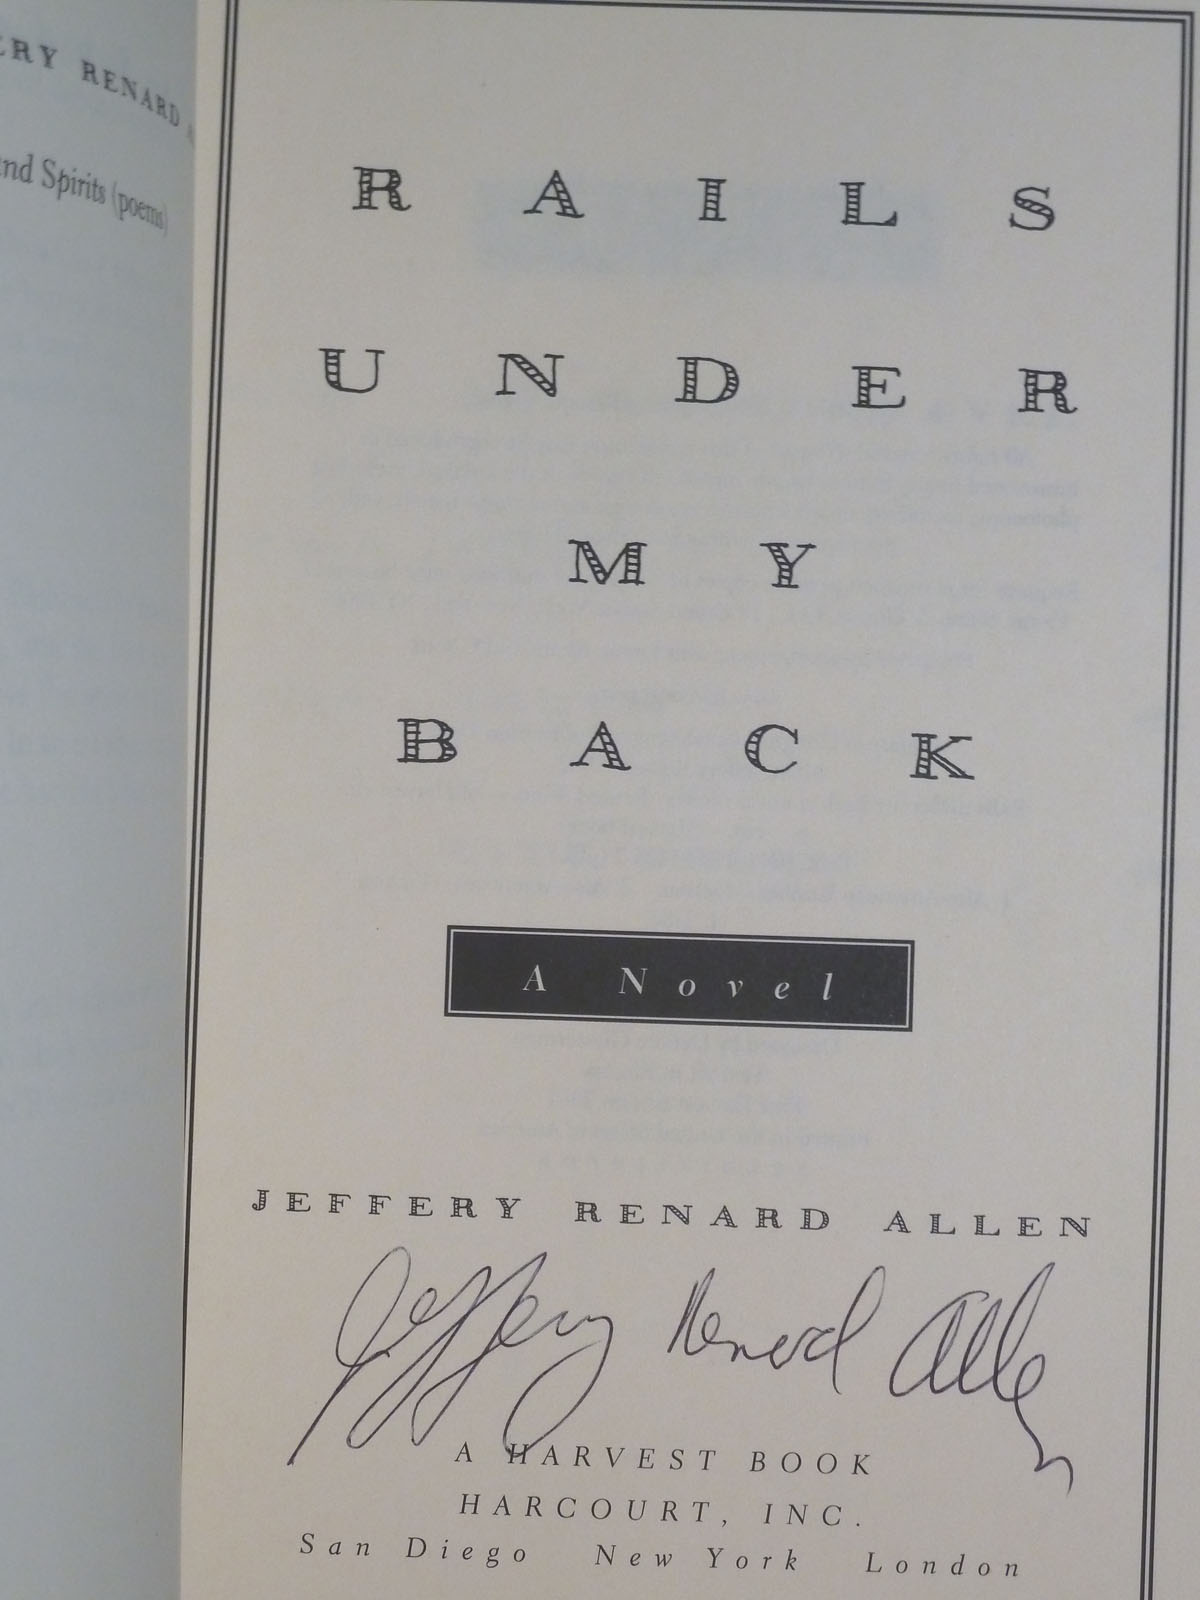 Rails Under My Back by Jeffery Renard Allen